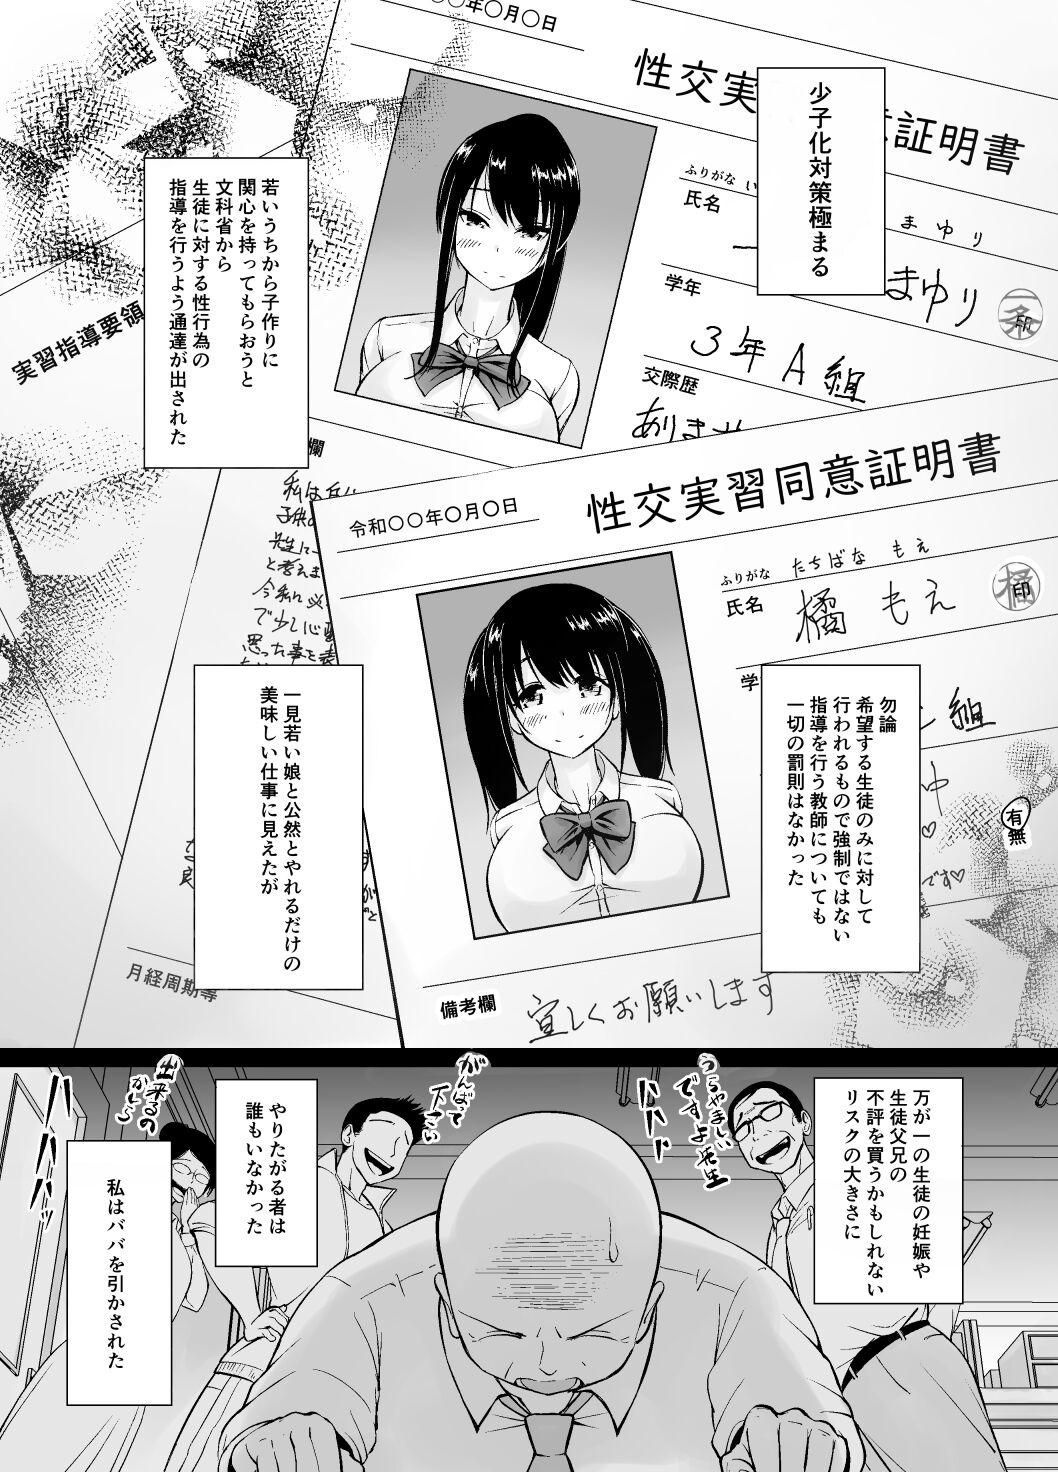 Hard Core Free Porn Meimon jogakuin no ko tsukuri kobetsu jisshuu - Original Cogiendo - Page 2